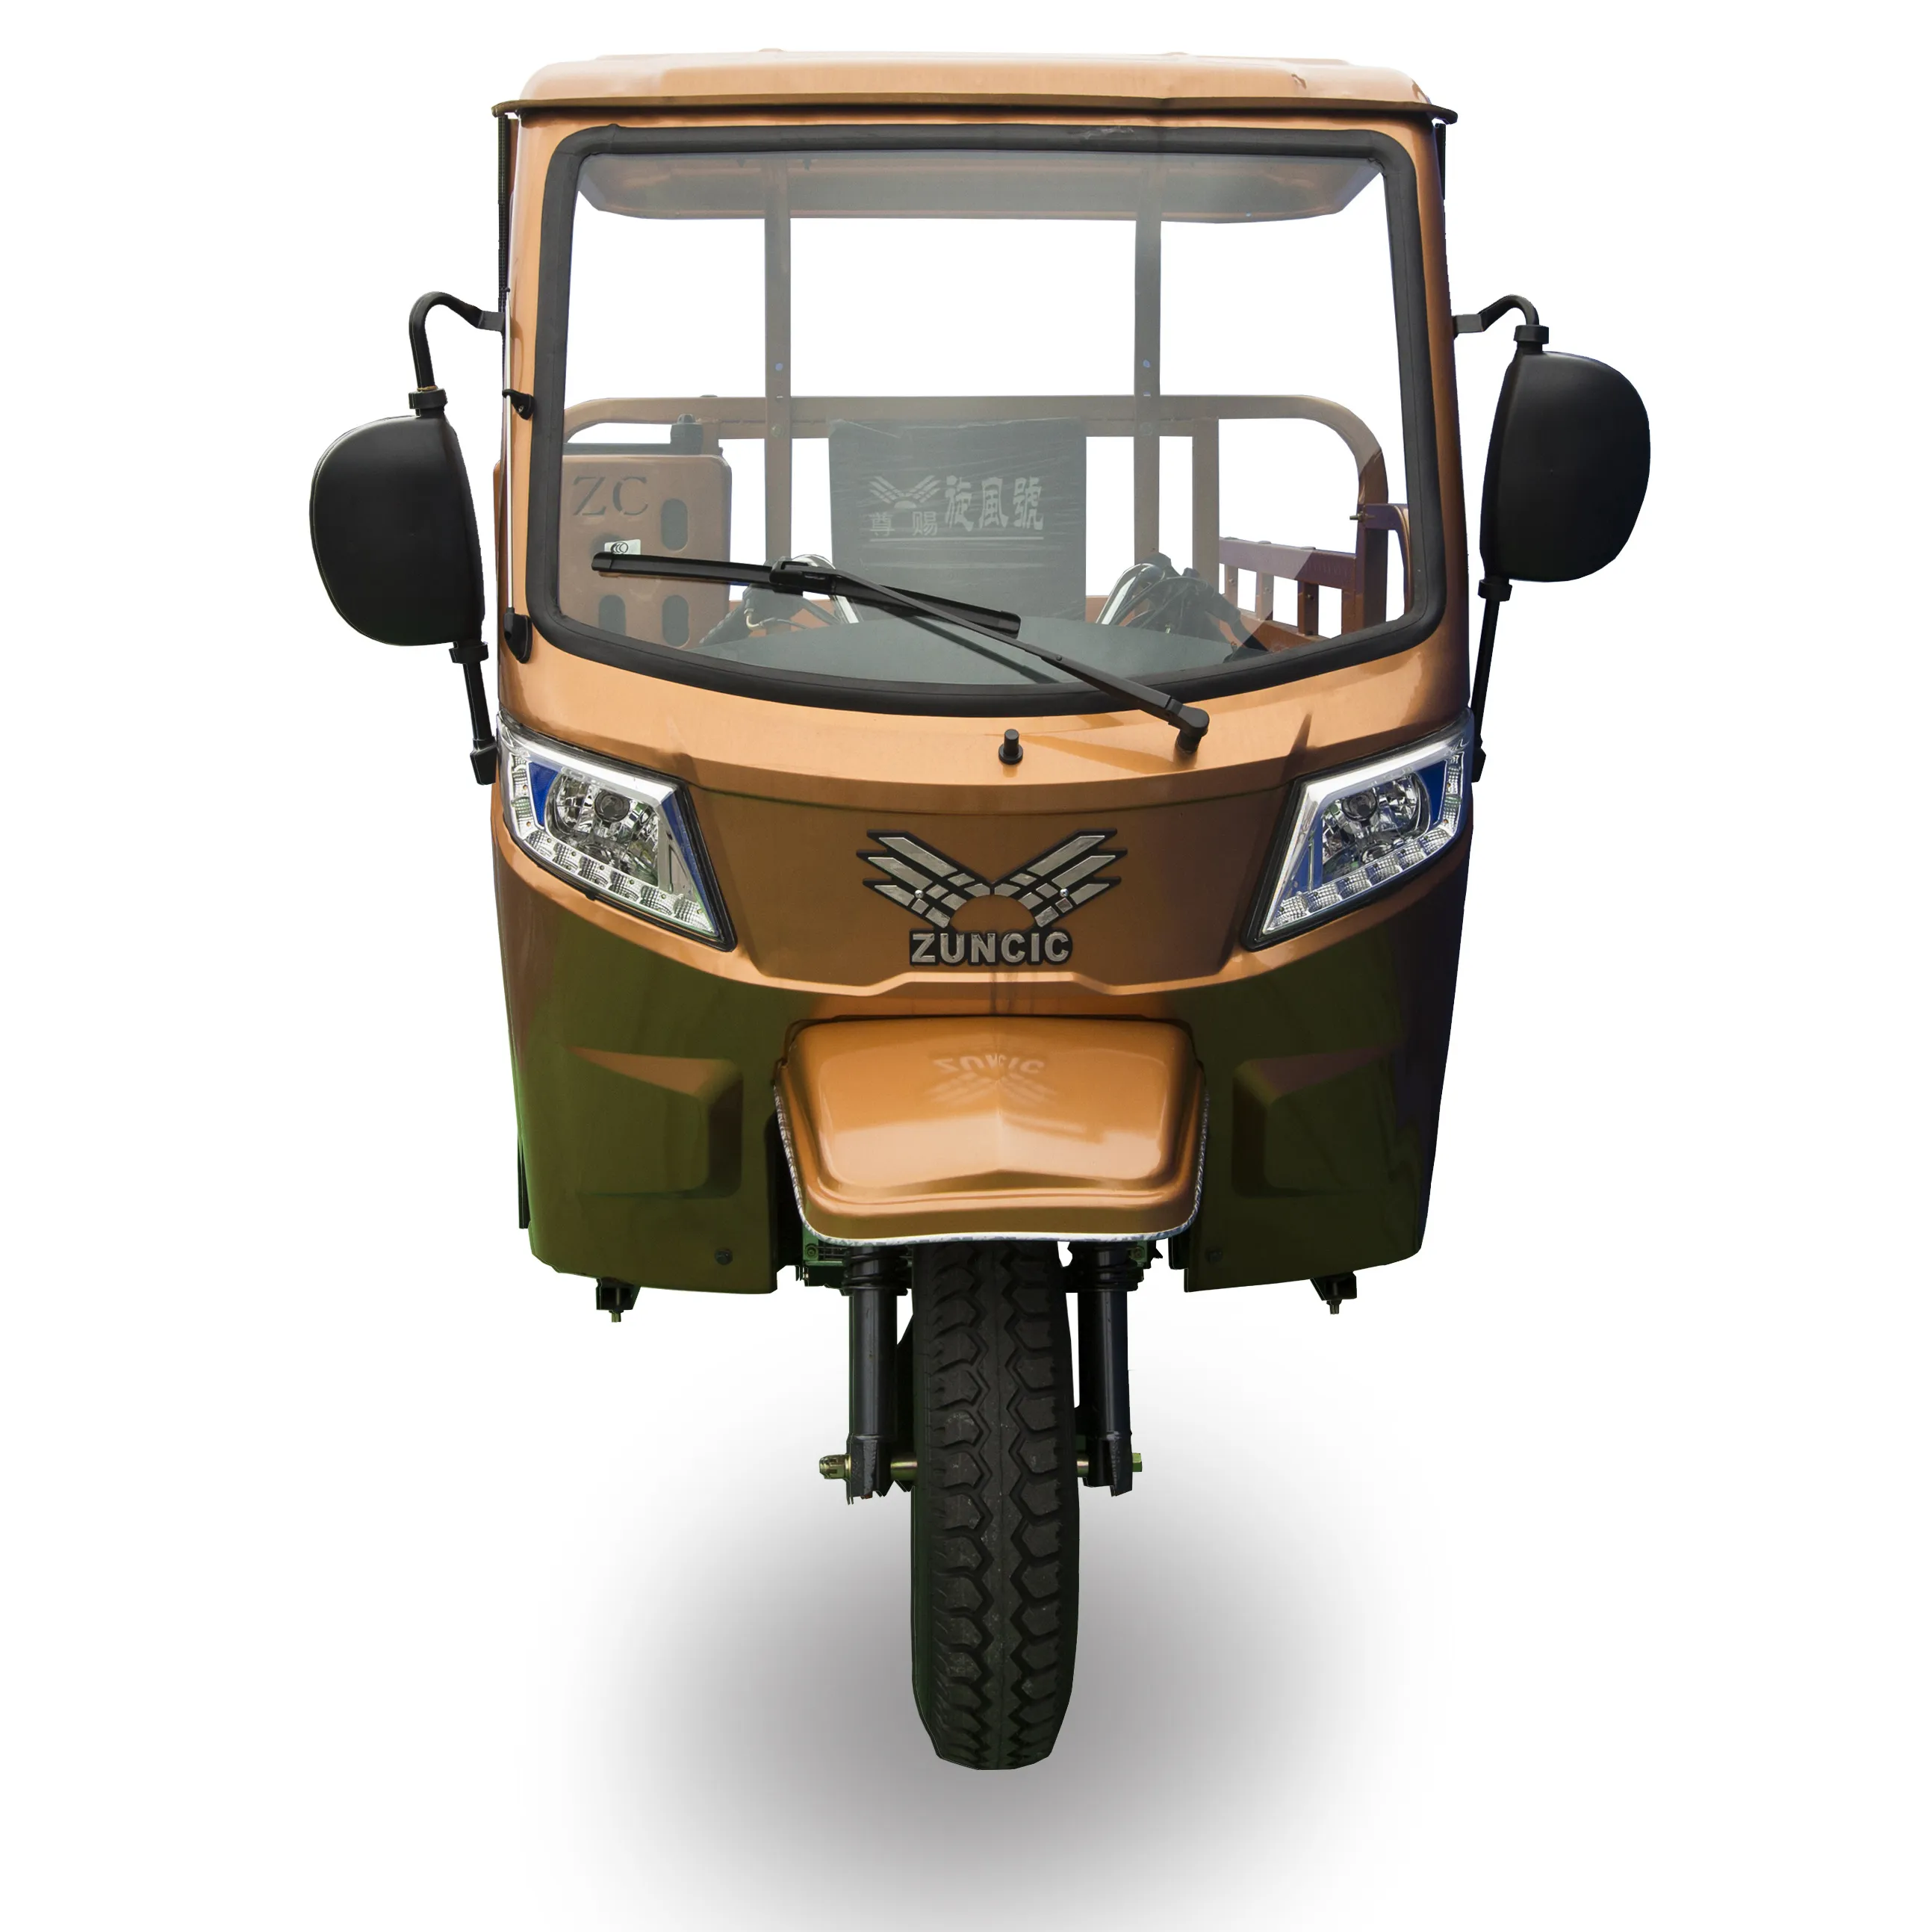 कार्गो tricycle 3 पहिया मोटरसाइकिल हवा ठंडा इंजन के साथ बिक्री के लिए